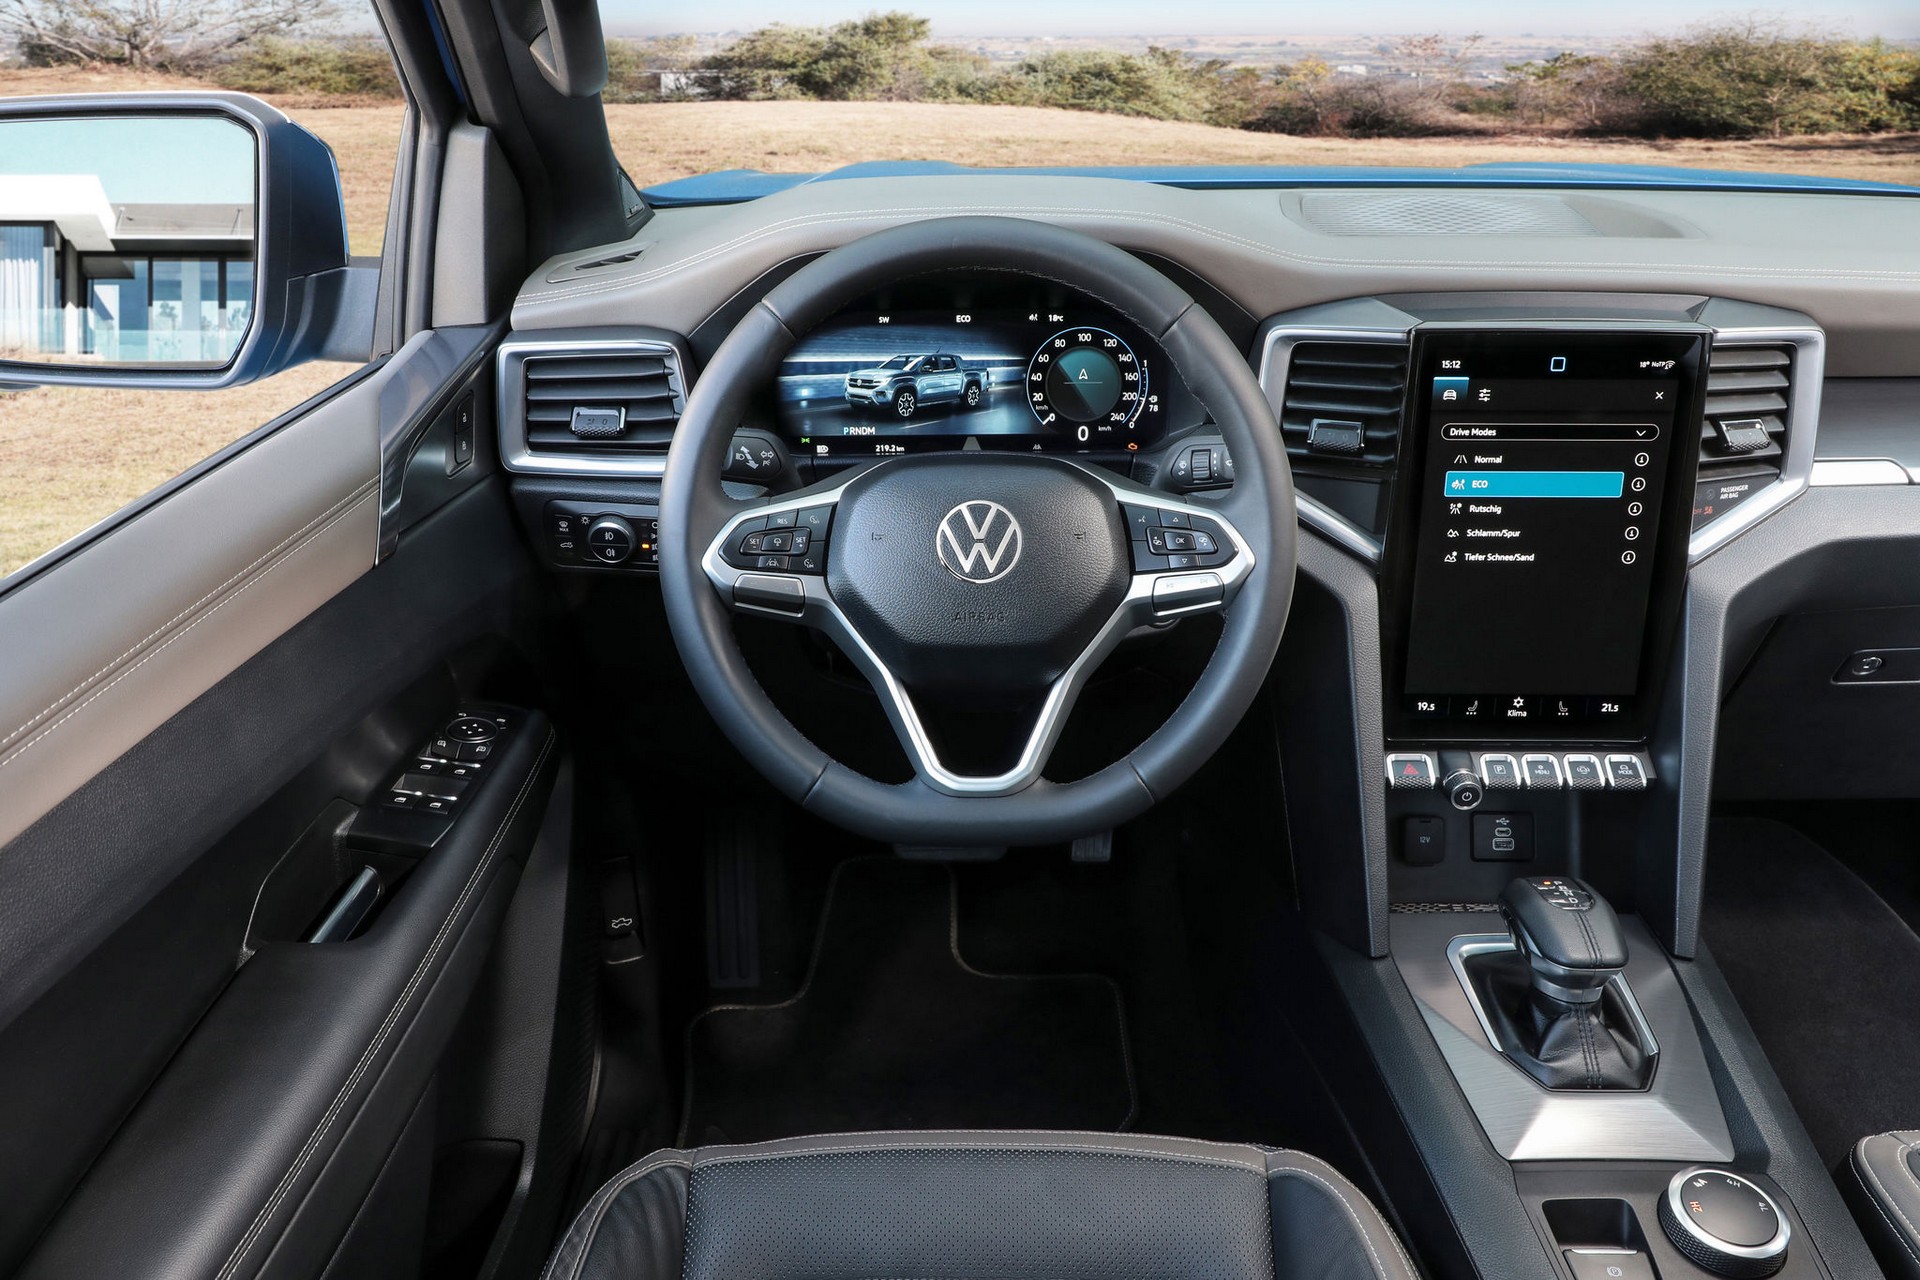 Yeni 2023 Volkswagen Amarok tanıtıldı: İşte tasarımı ve özellikleri